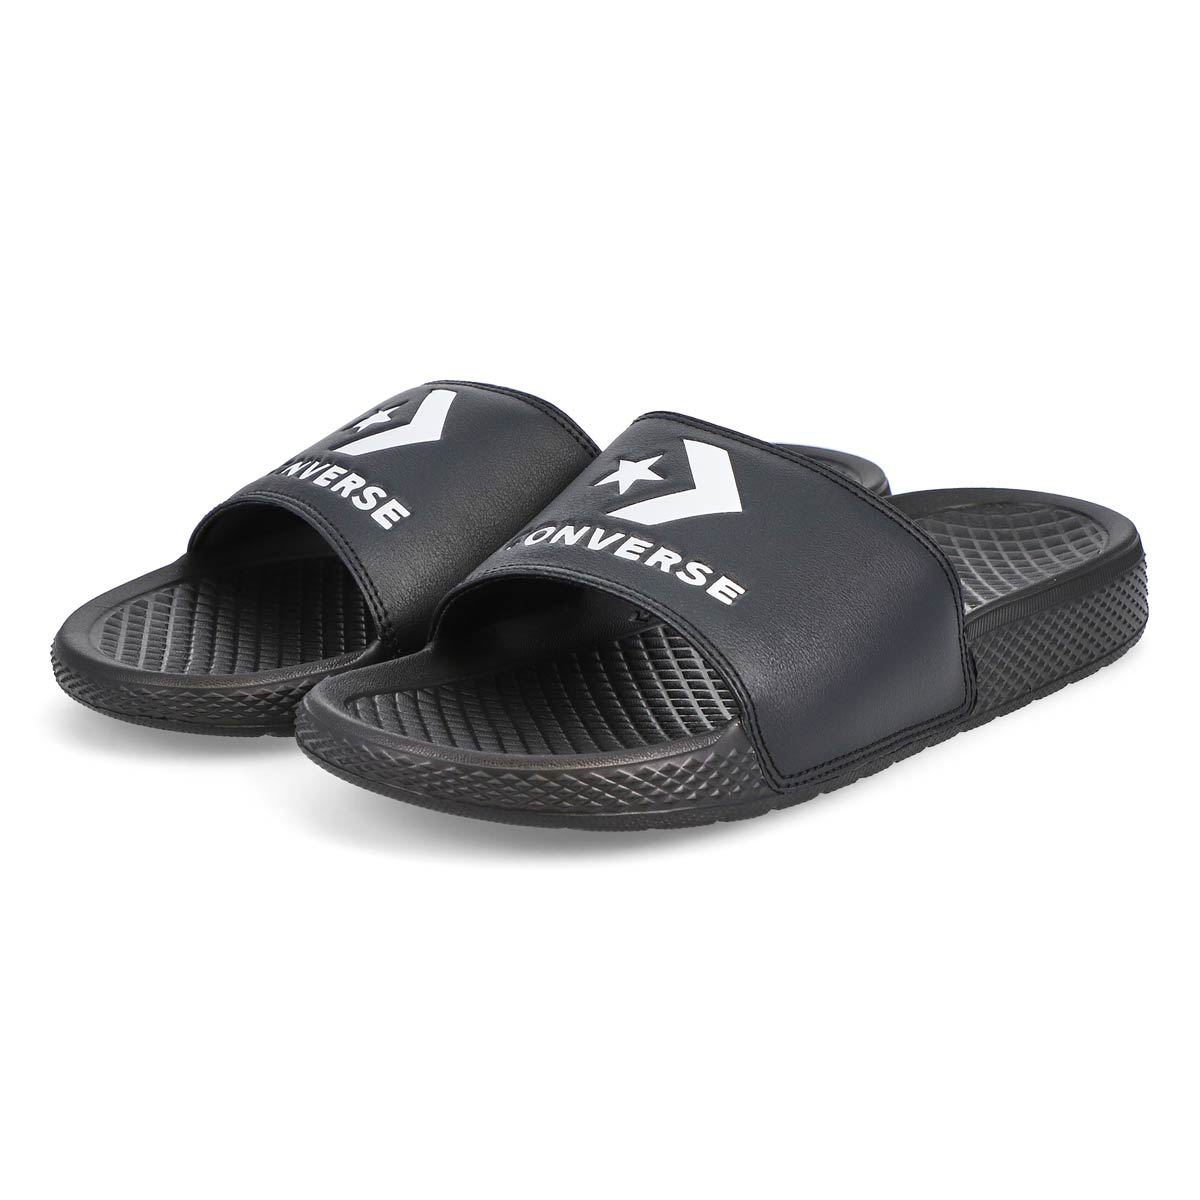 Men's All Star Casual Slide Sandal - Black/White